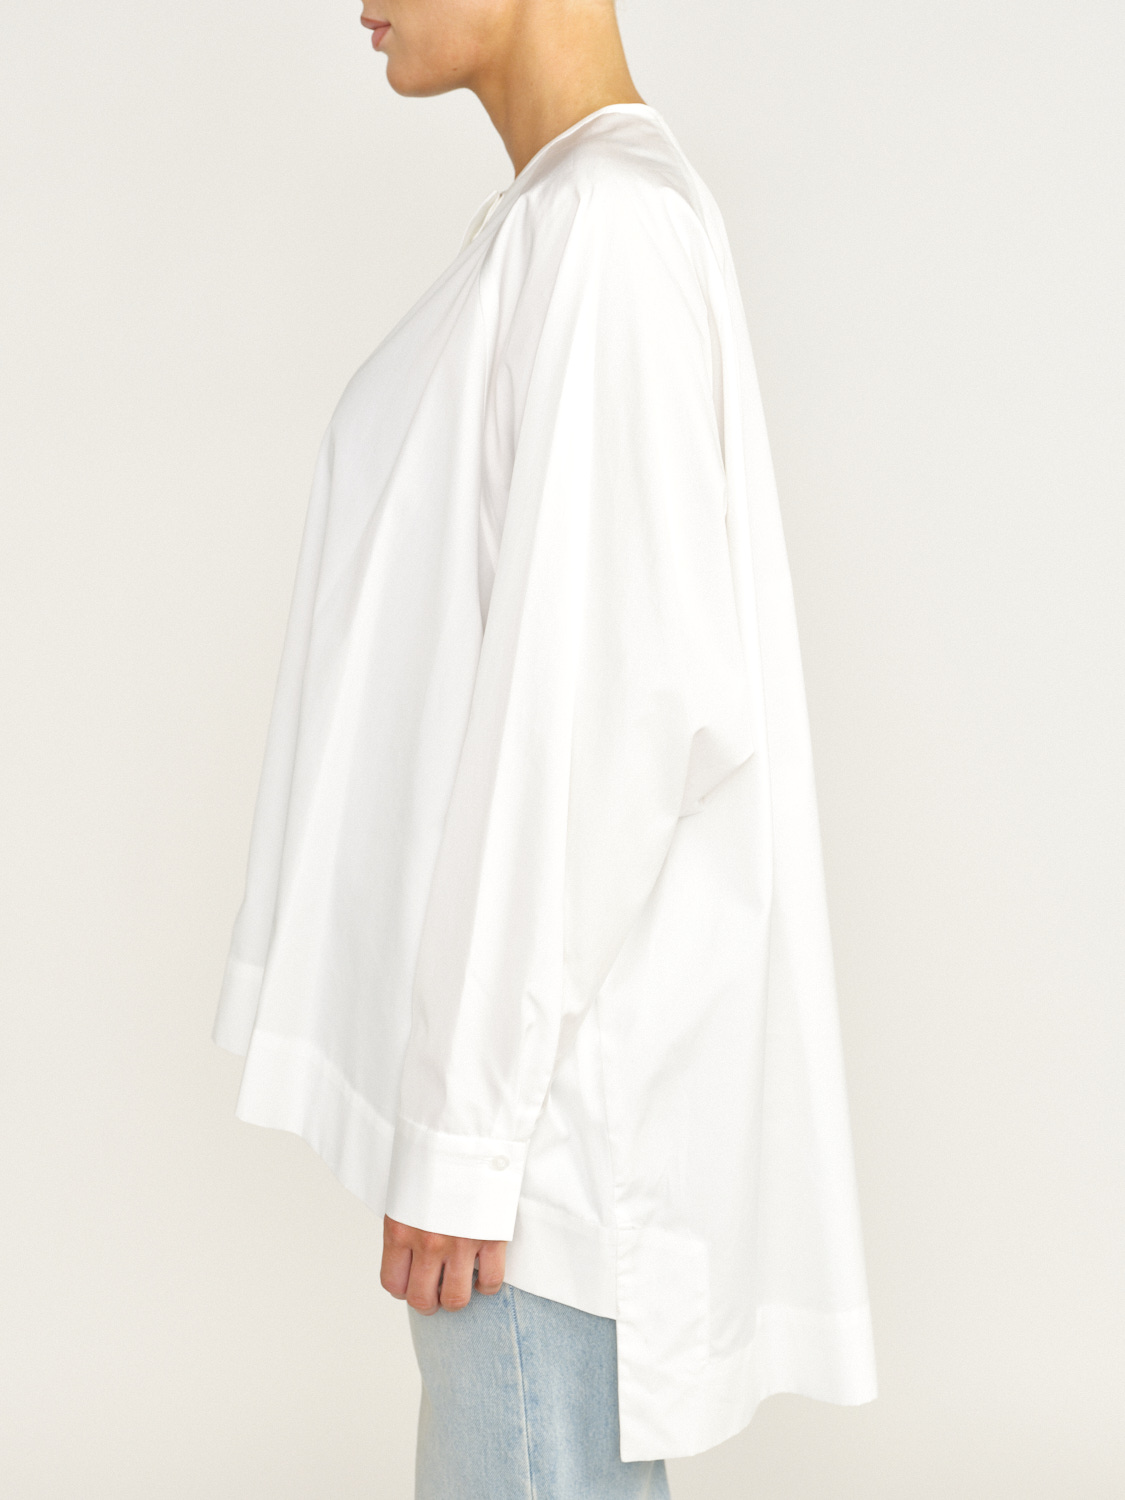 Eva Mann Blusa oversize de corte recto confeccionada en algodón blanco 34